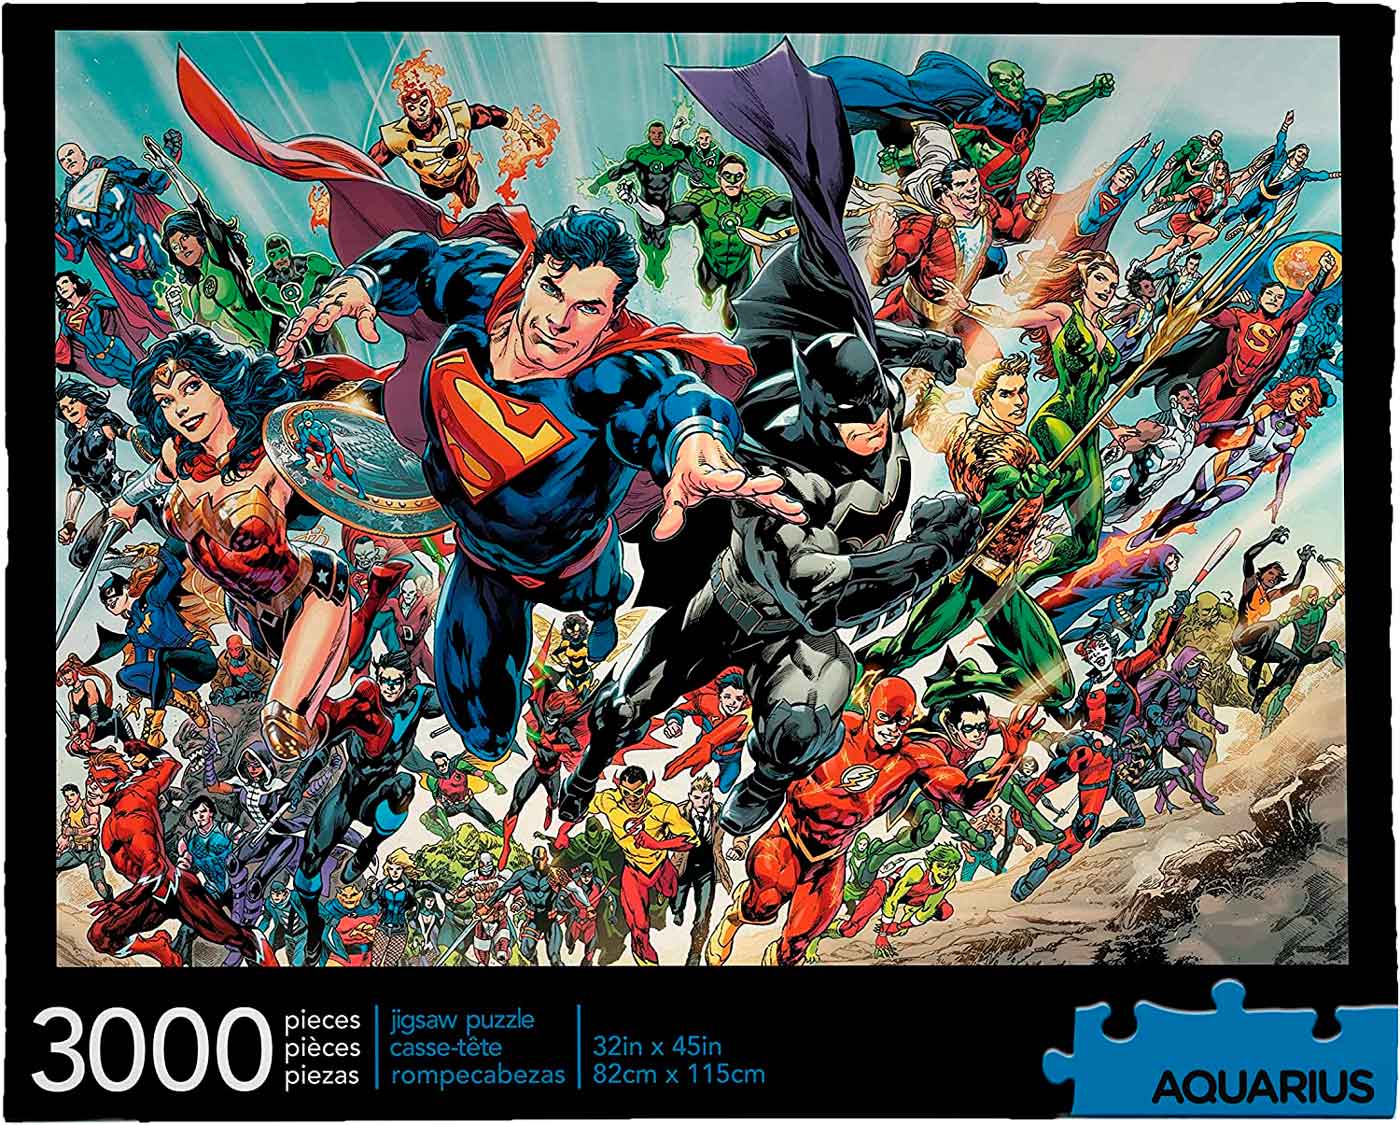 Comprar Puzzle Aquarius Héroes DC Cómics de 3000 Piezas - Aquarius-68512